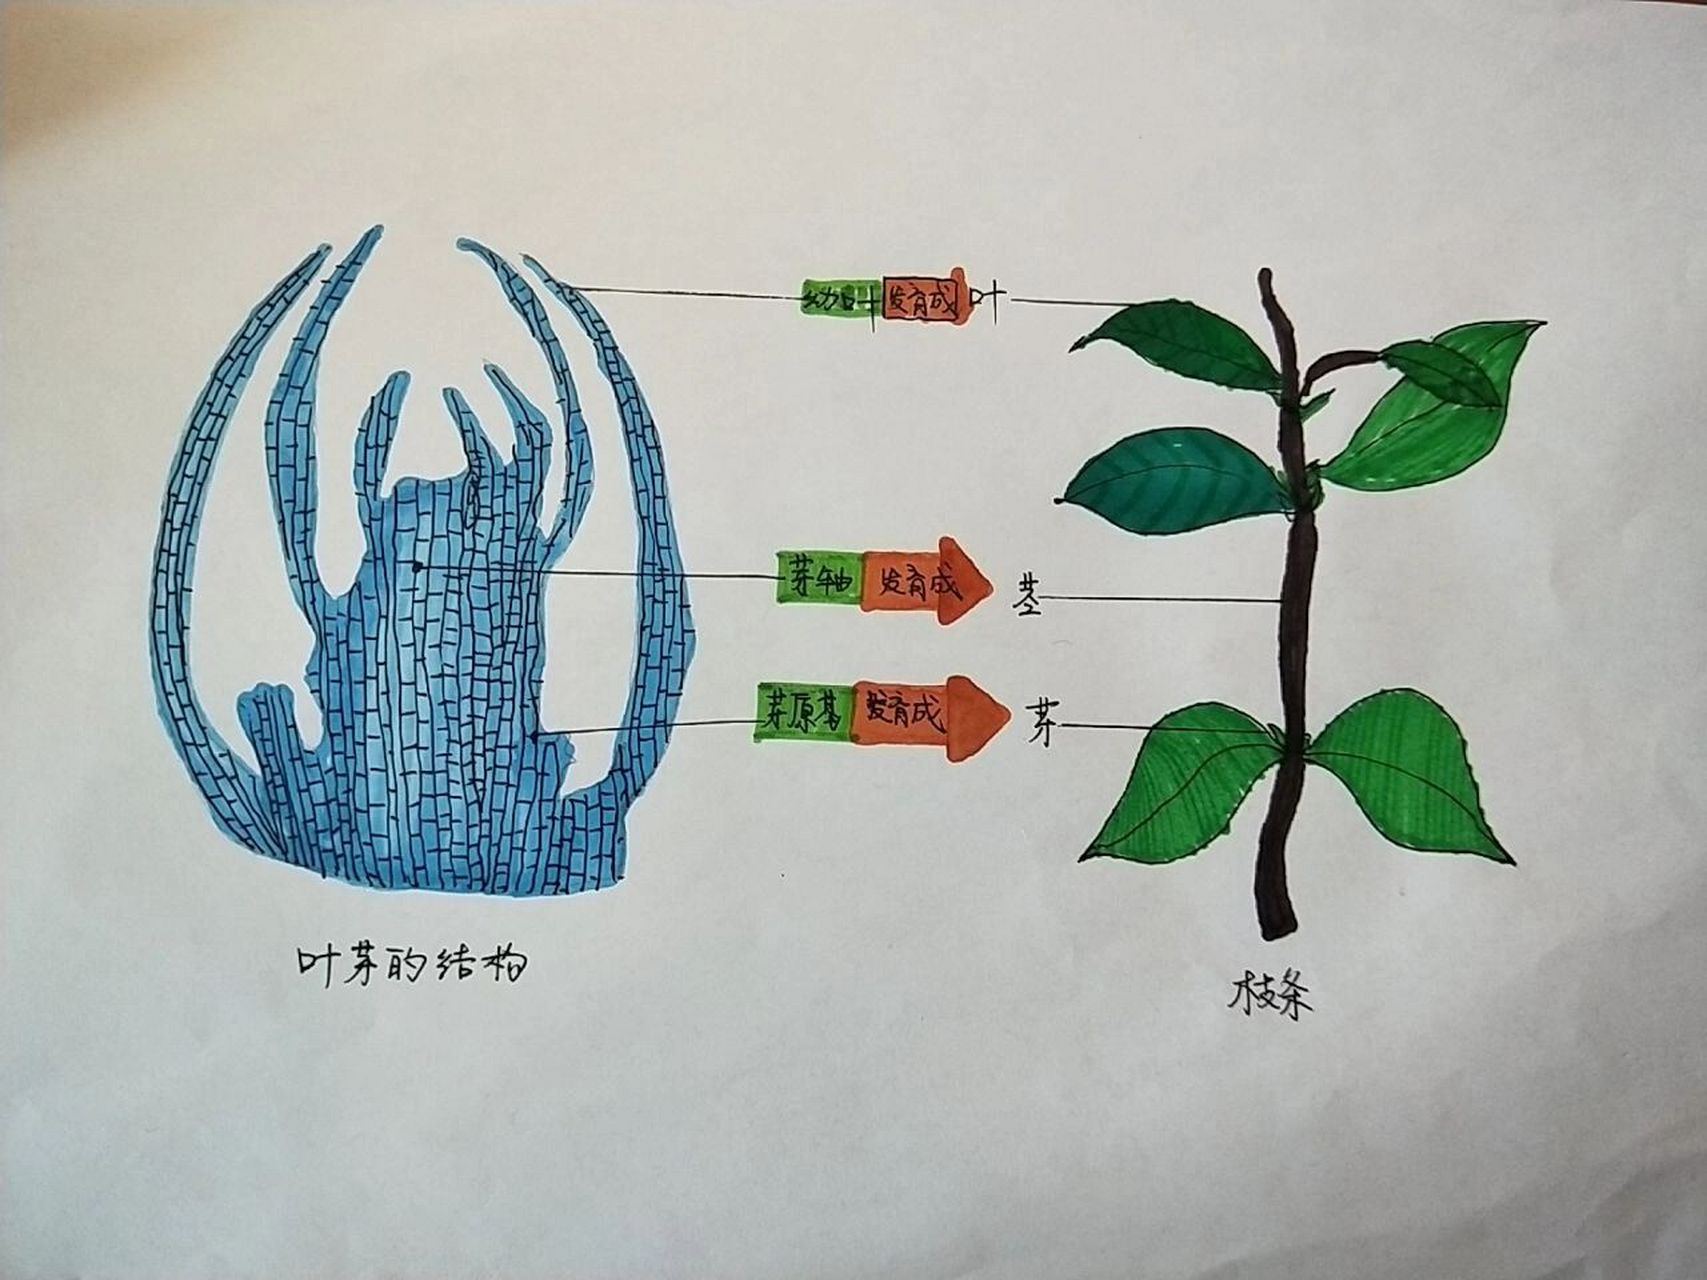 芽的发育结构图图片